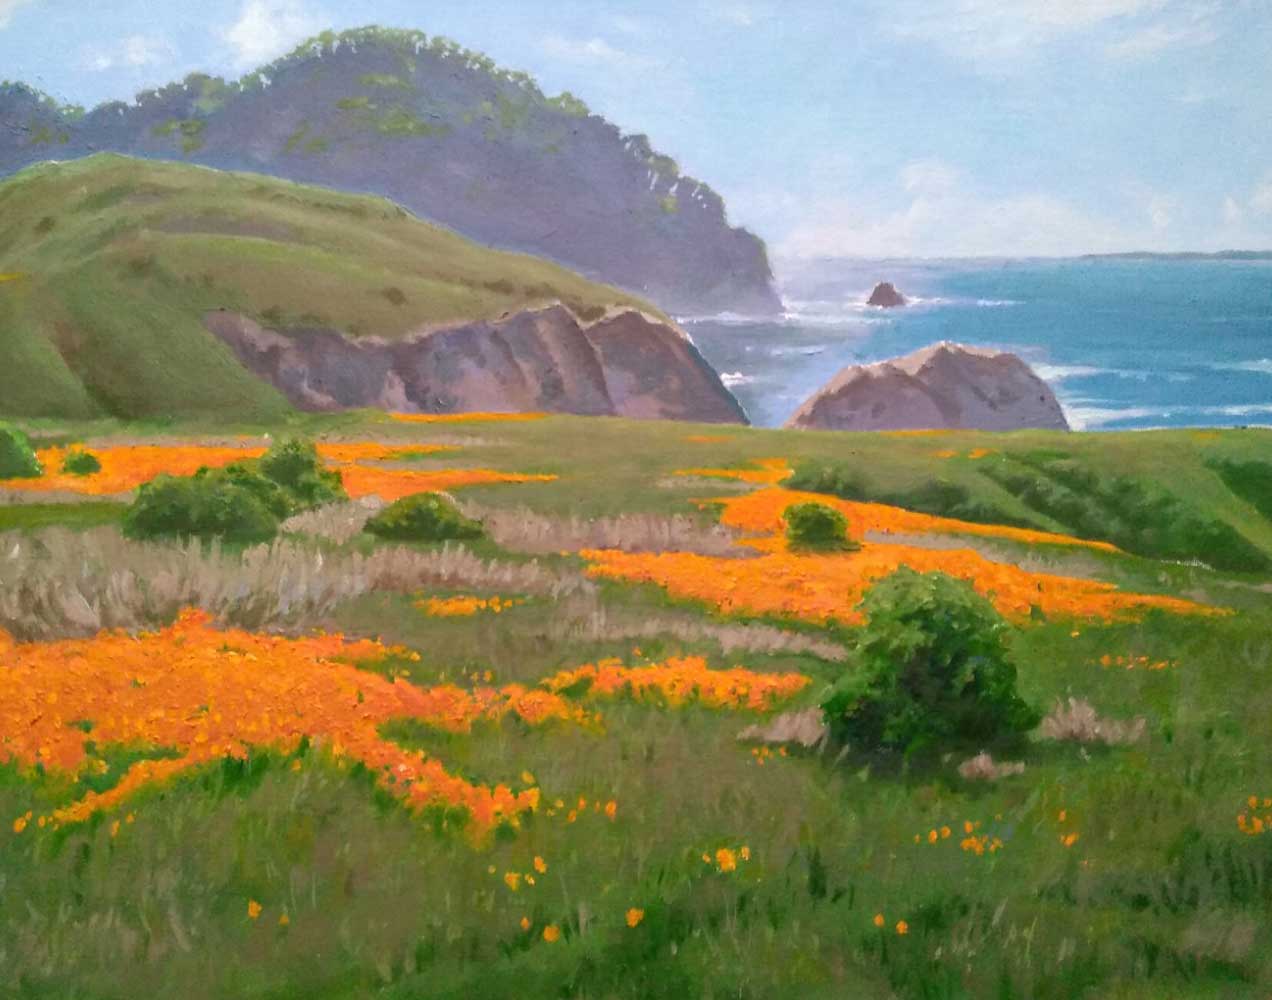 Painting by Dave Van Dyke - poppies overlooking ocean